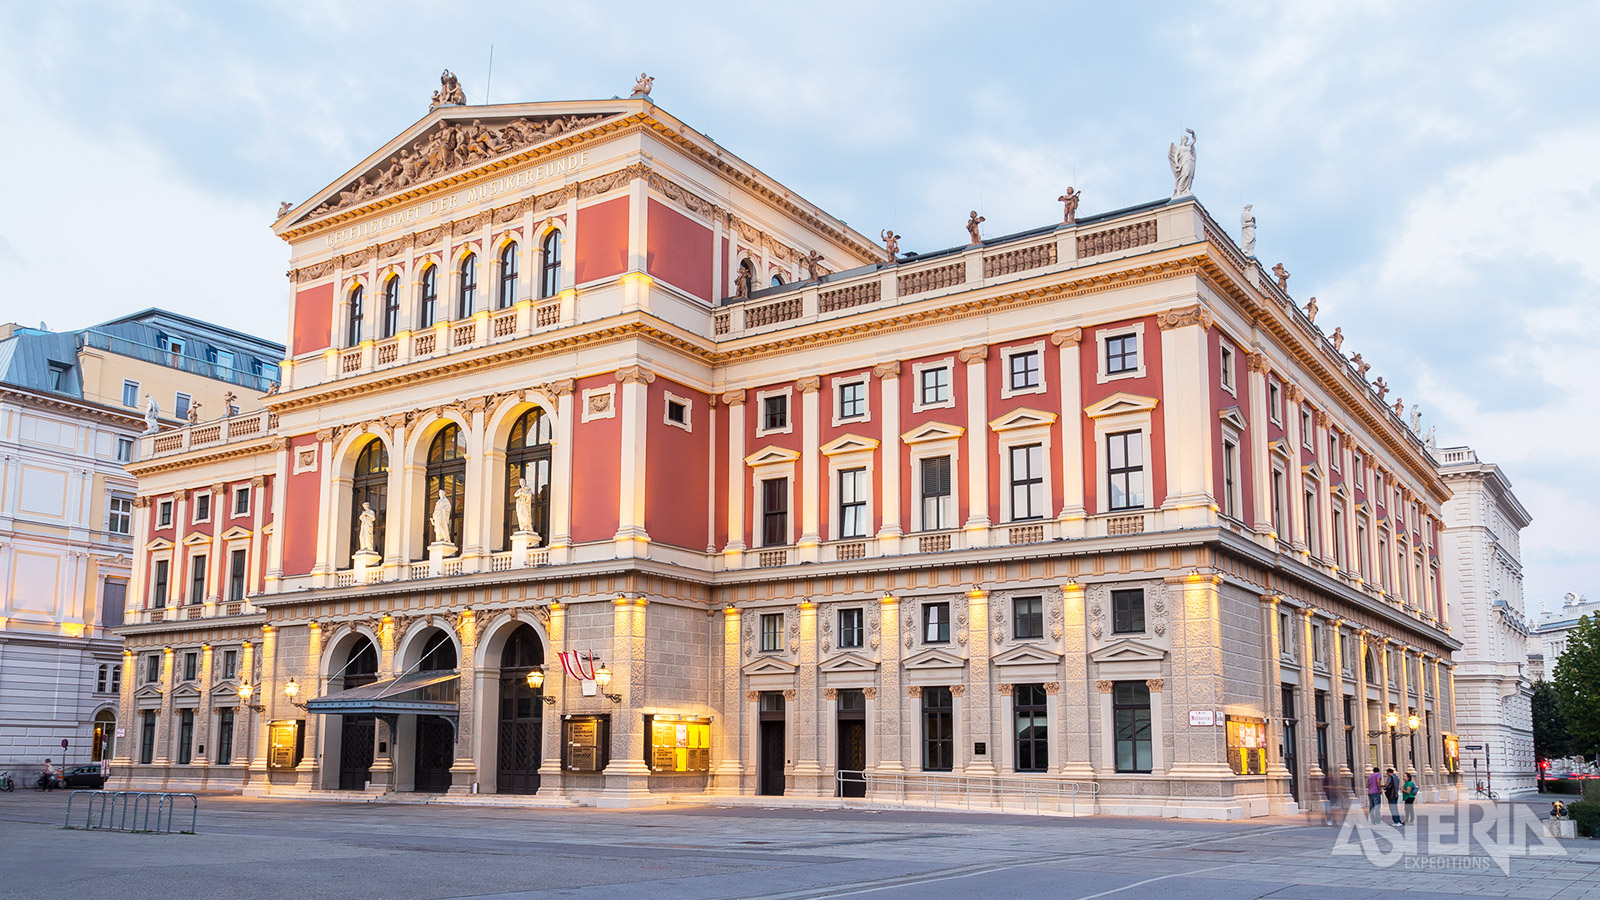 Aan het einde van het programma is er nog wat tijd voor een begeleid bezoek aan de Wiener Staatsoper of Musikverein in Wenen